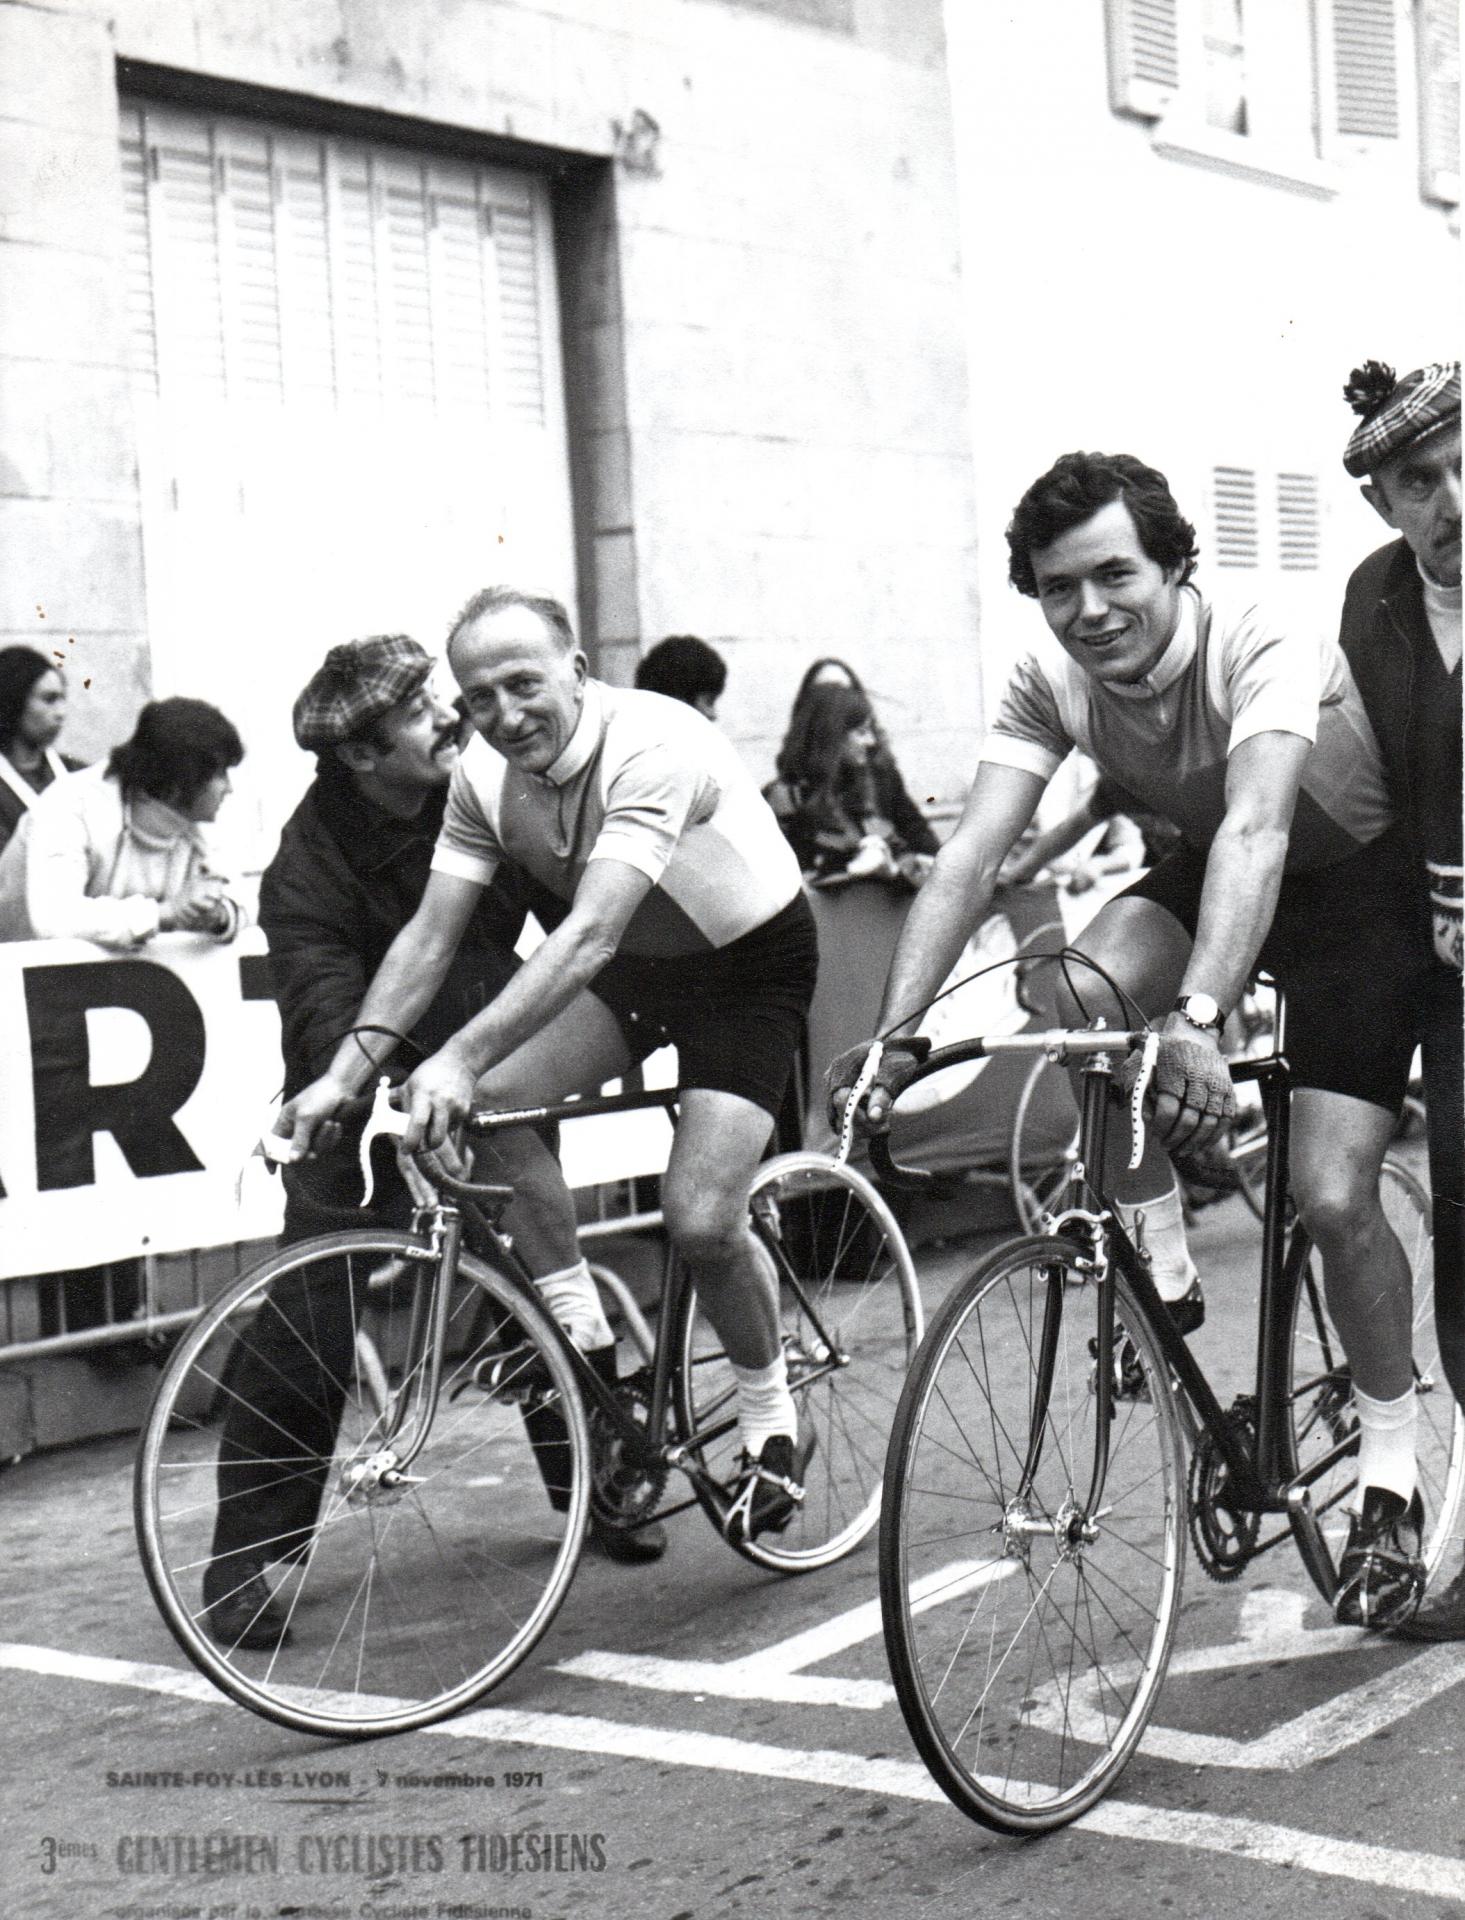 1971 jo et jp routens gentlemen cyclistes fidesiens